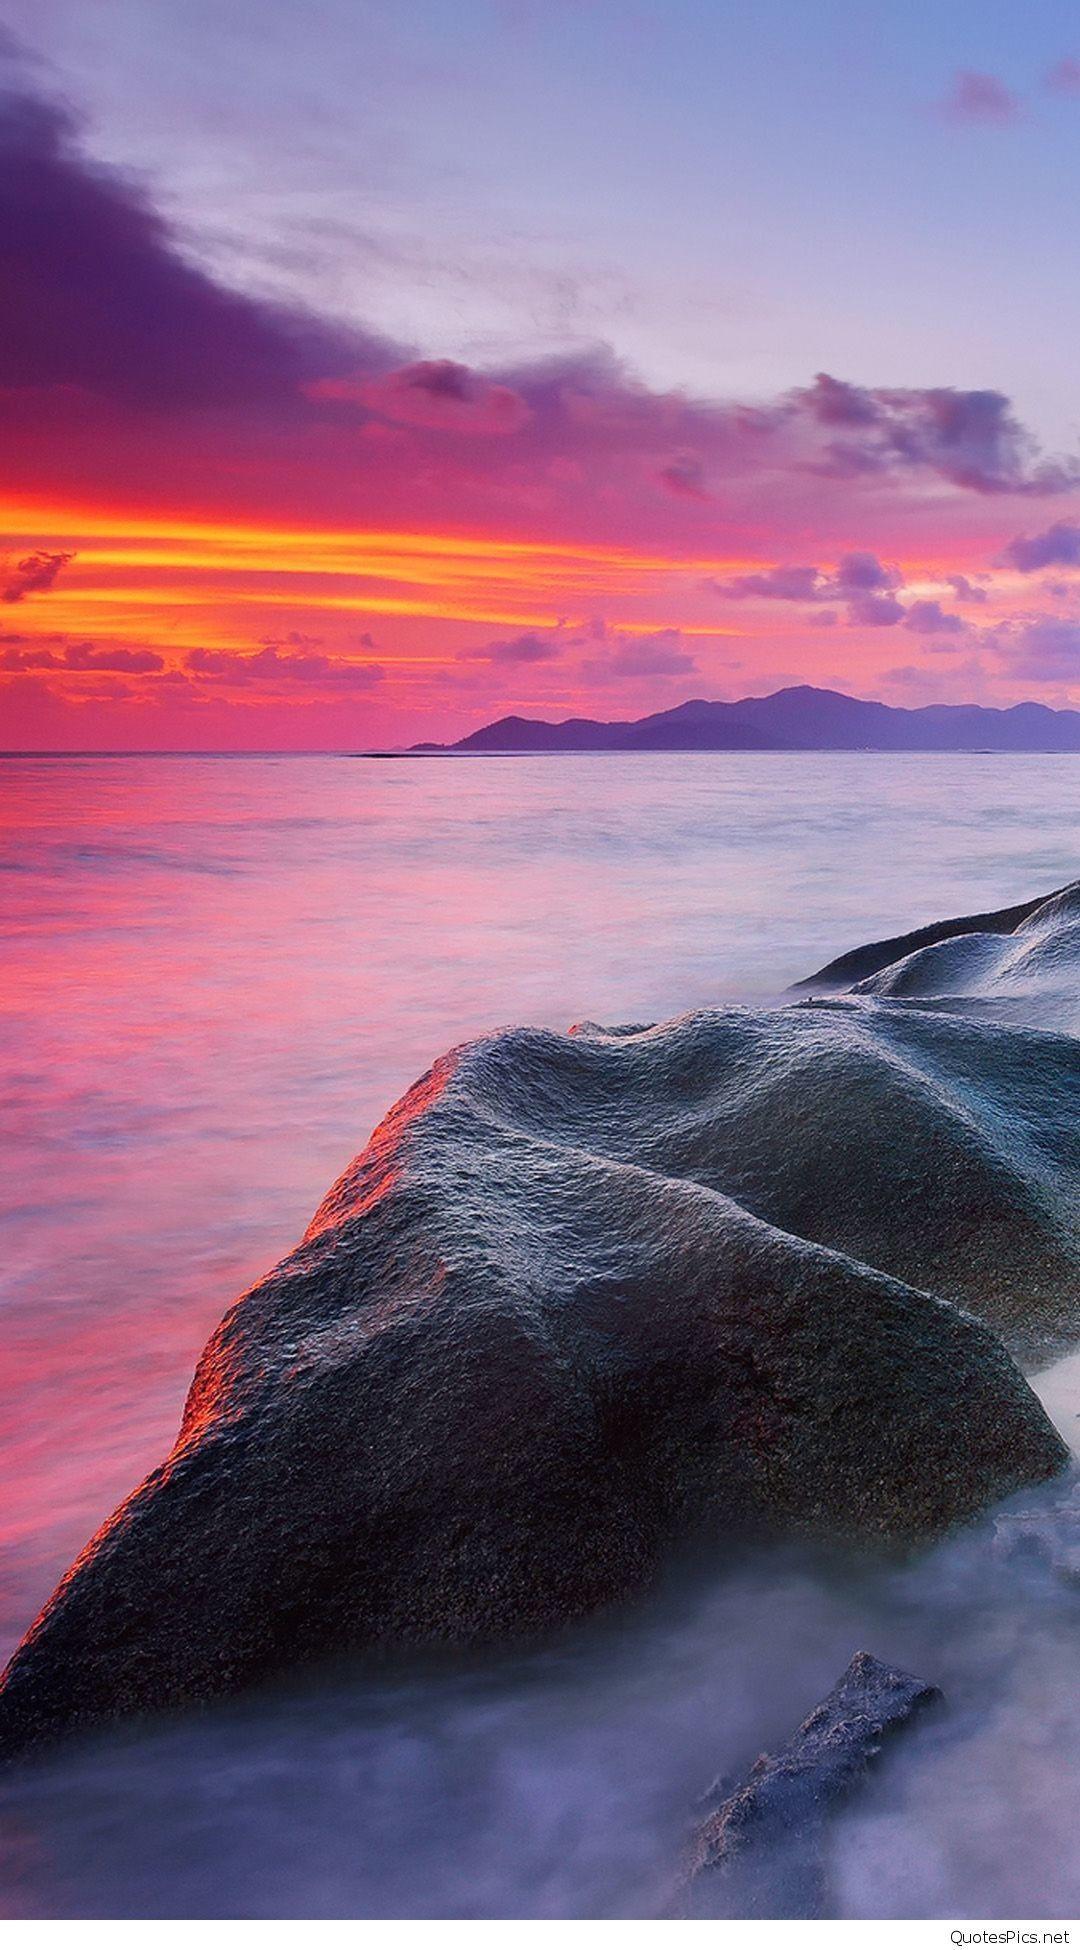 Ocean Sunset Background Iphone / Sunset Ocean Beach Iphone Wallpaper